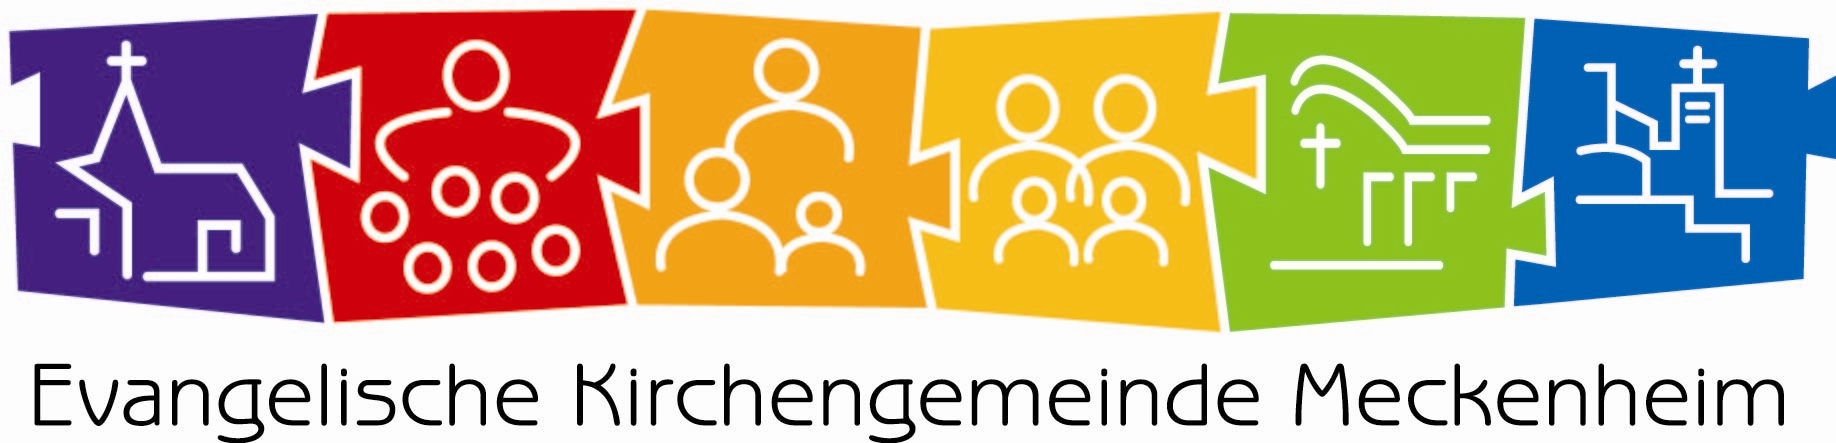 Wort-Bild-Marke der Evangelischen Kirchengemeinde Meckenheim